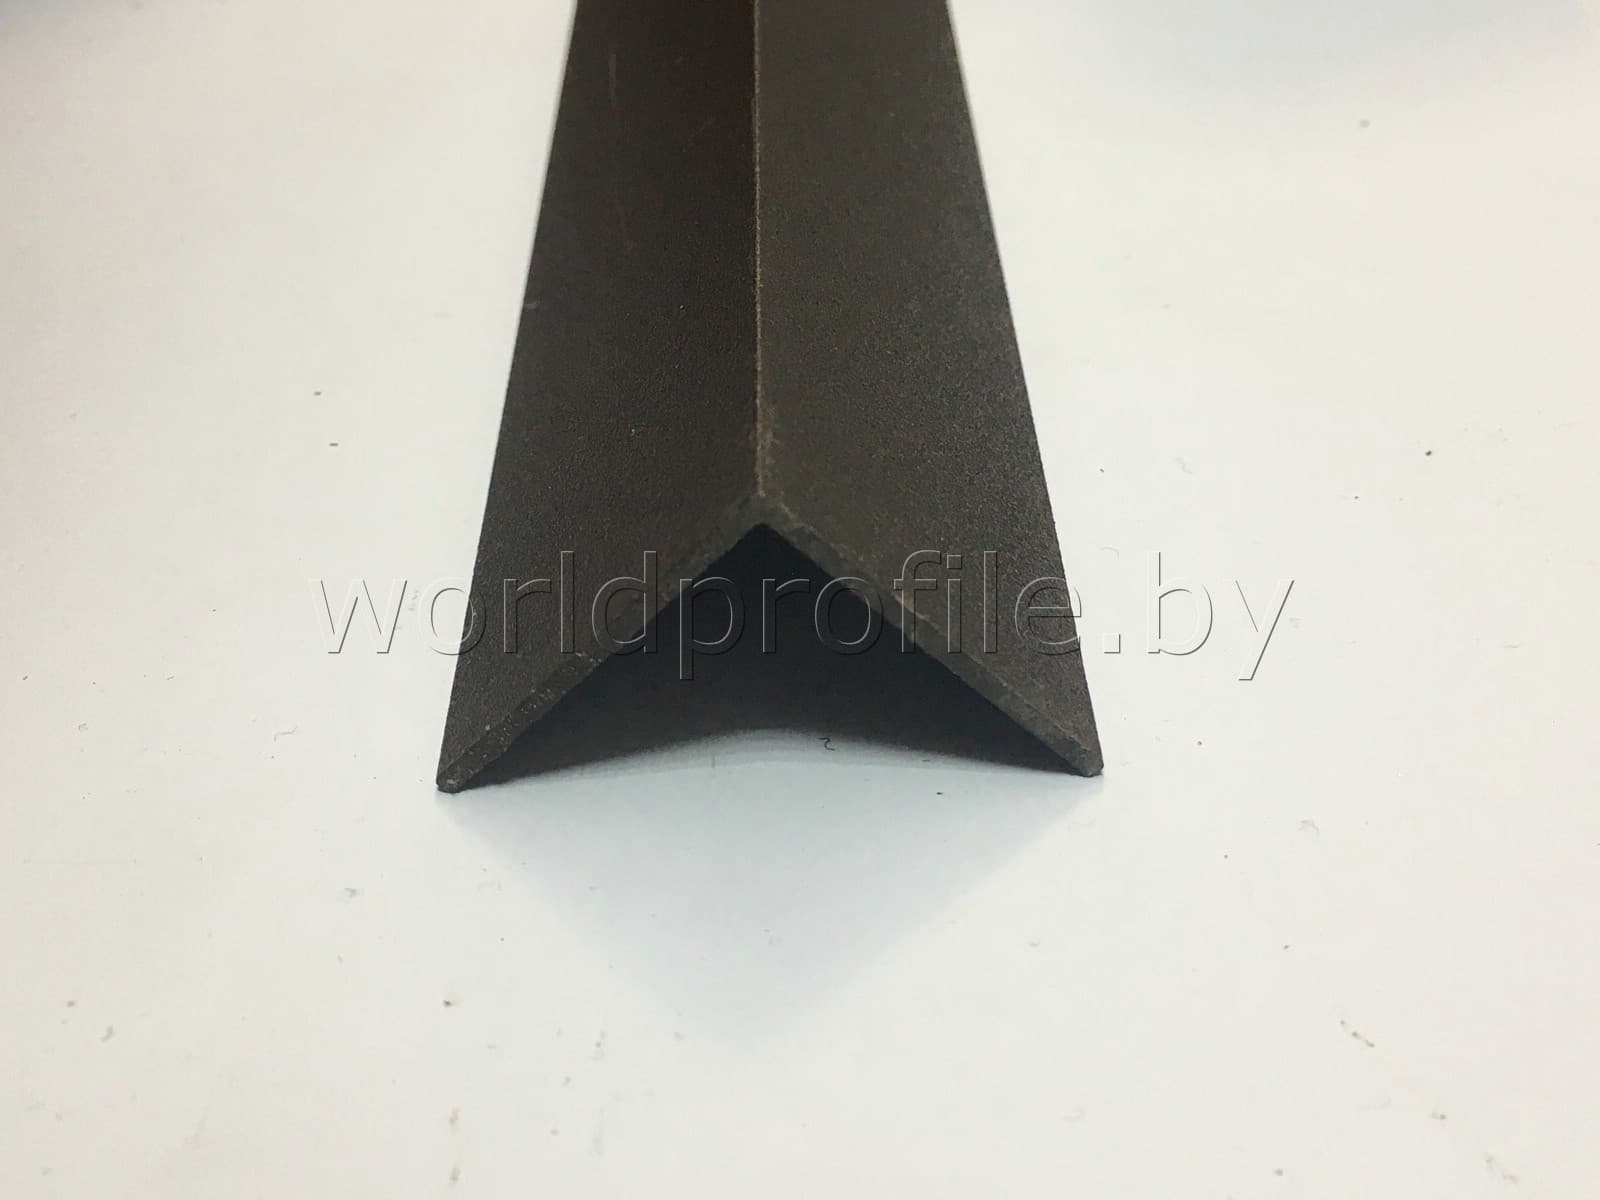 Уголок алюминиевый 30х30х1.2 (2,7м), цвет шоколад